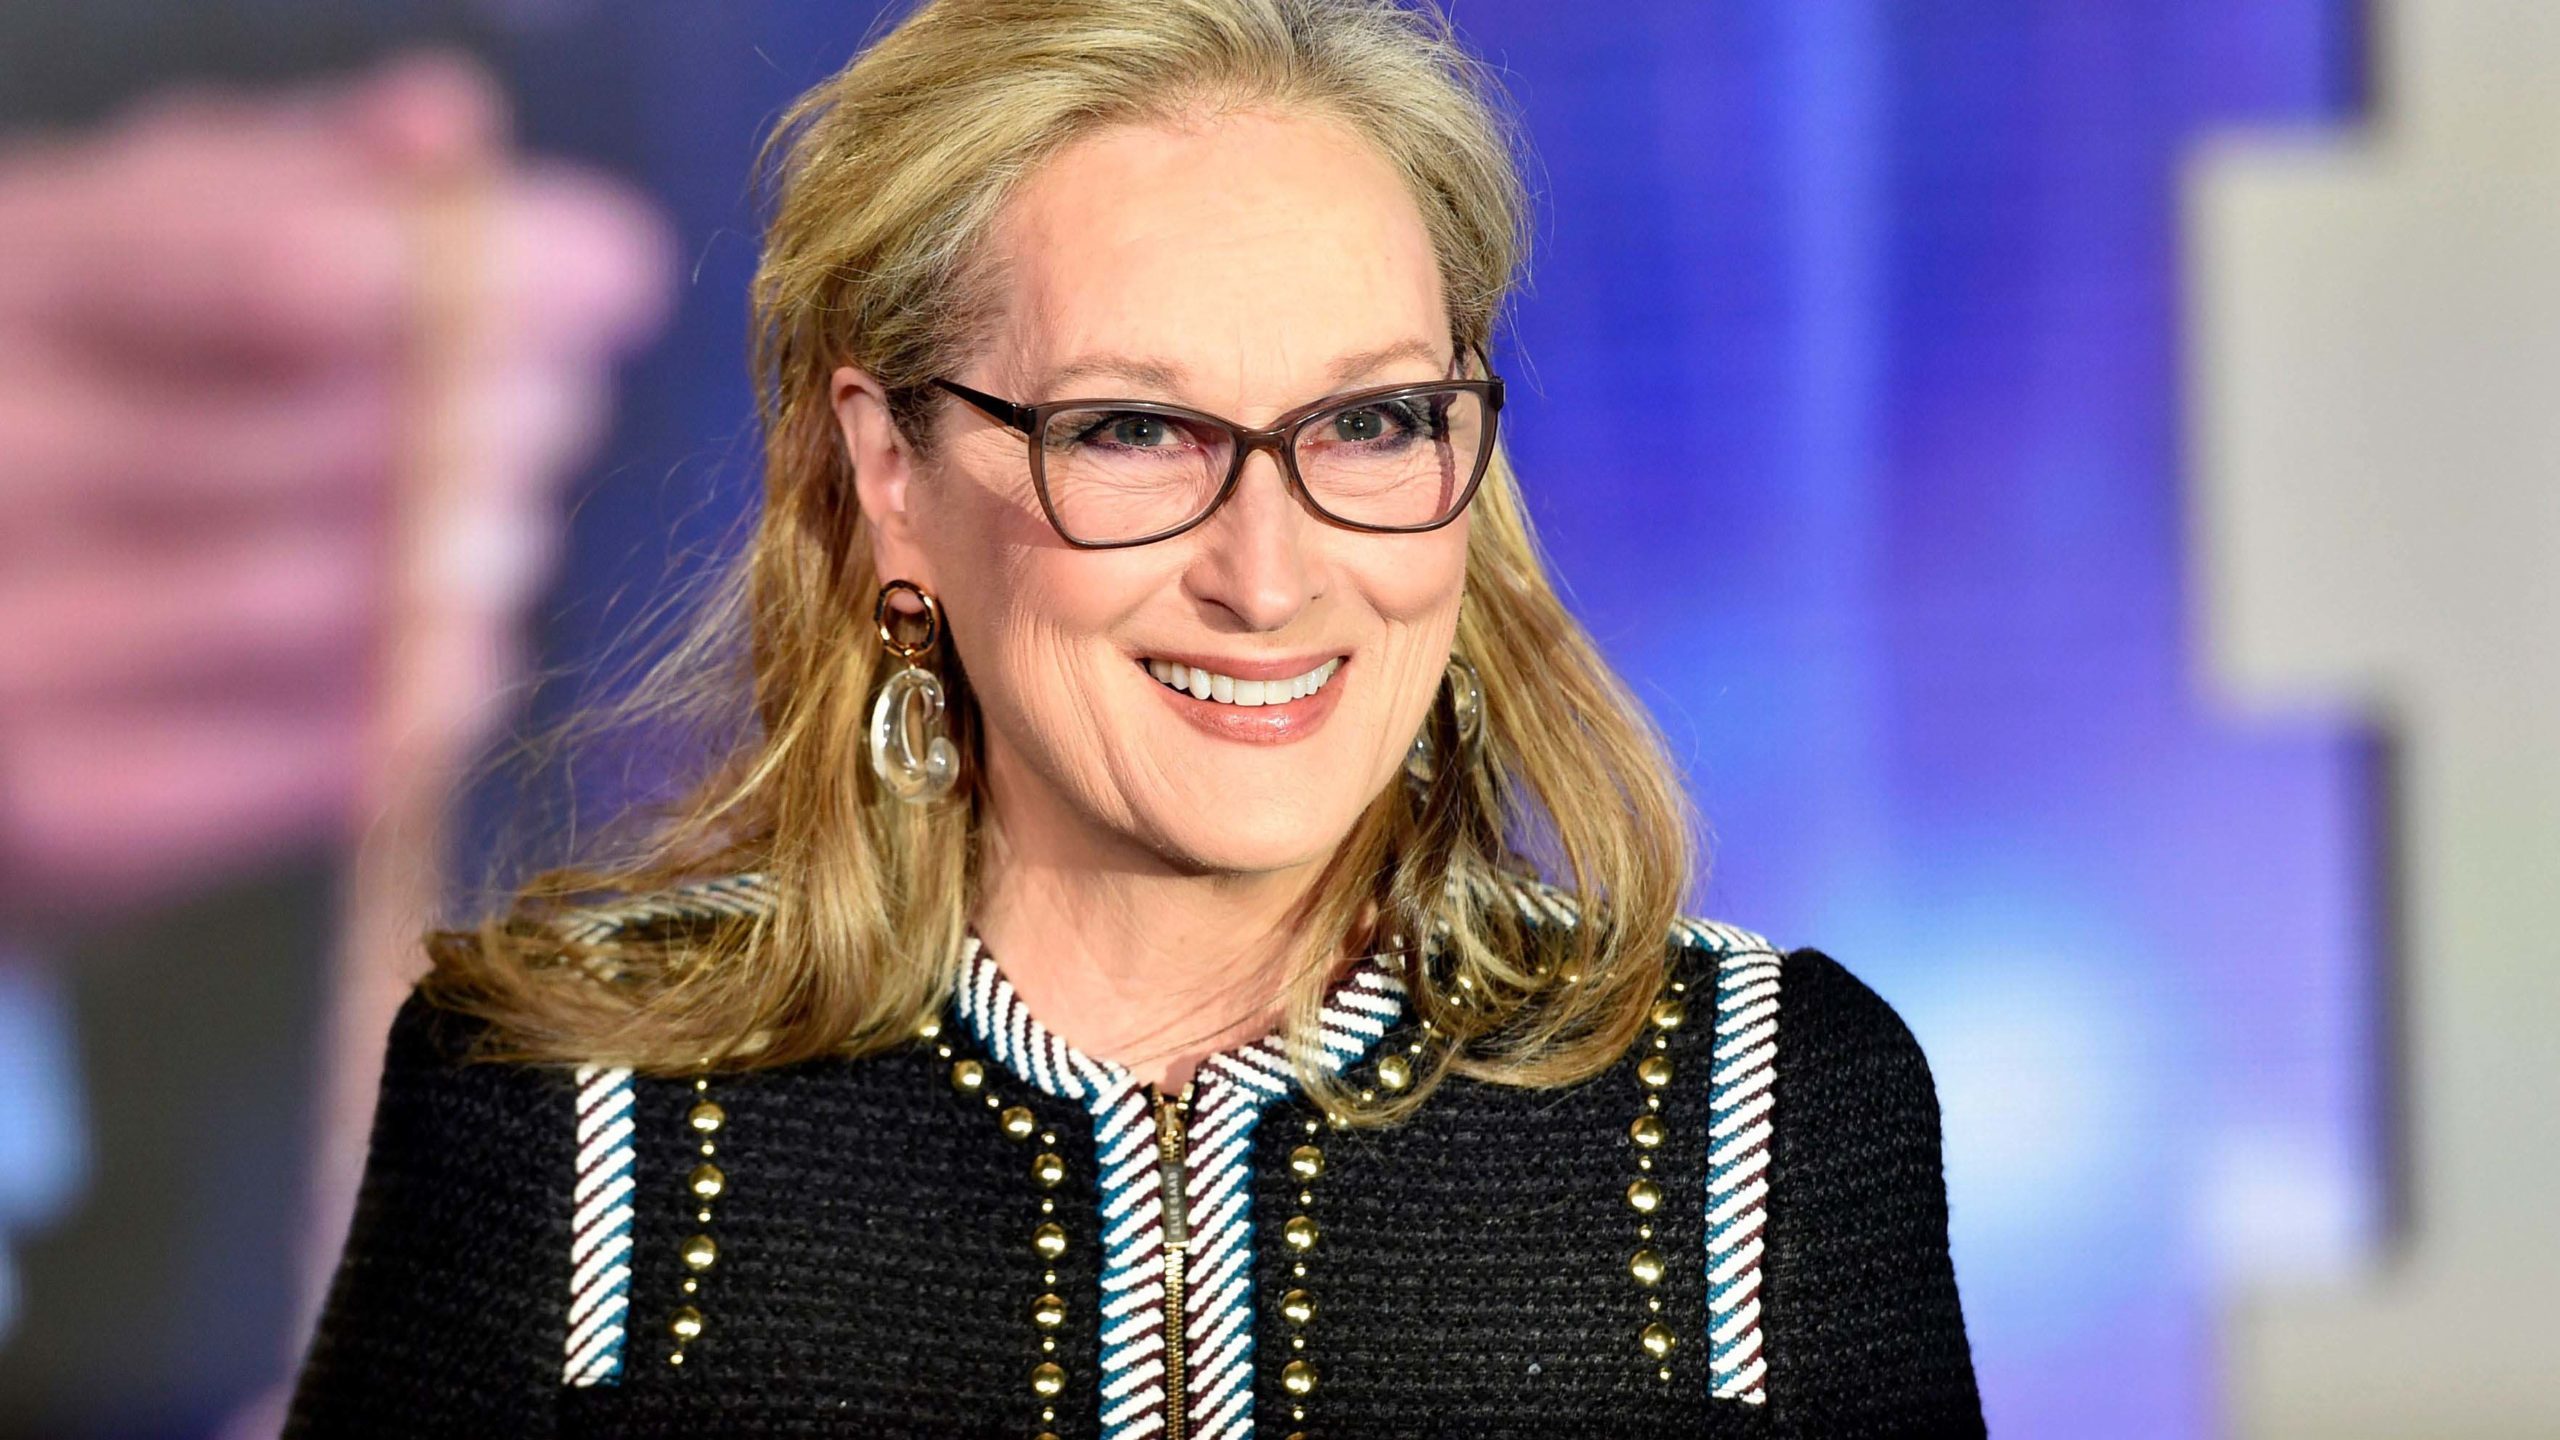 LIVROS | Reynolds, Hemsworth, Cumberbatch e Streep fazem leitura de clássico!